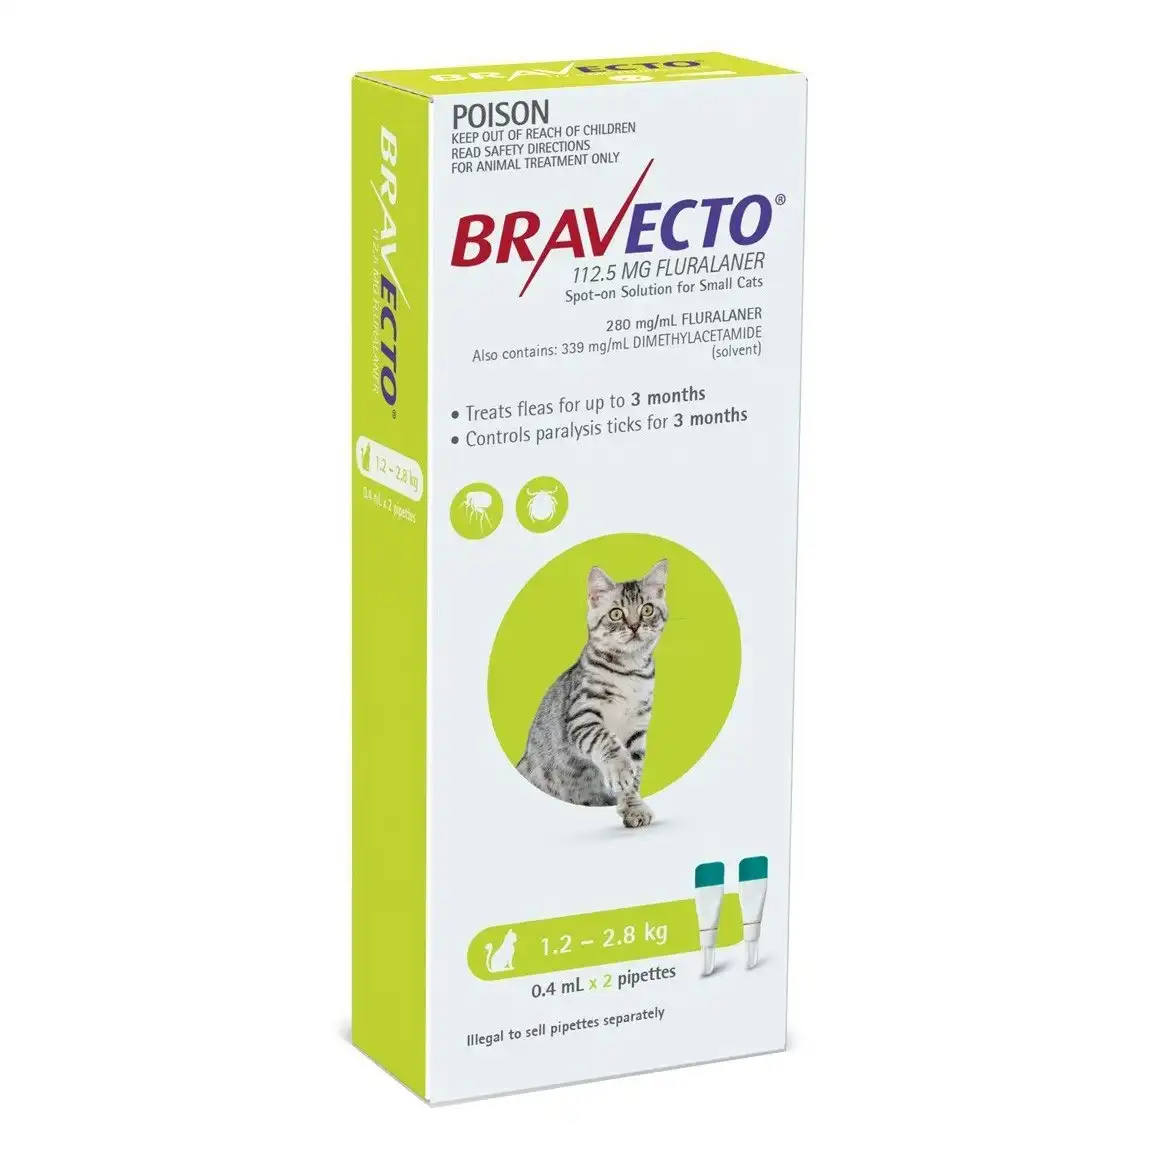 Bravecto For Cats 1.2kg - 2.8kg 2 Pipettes